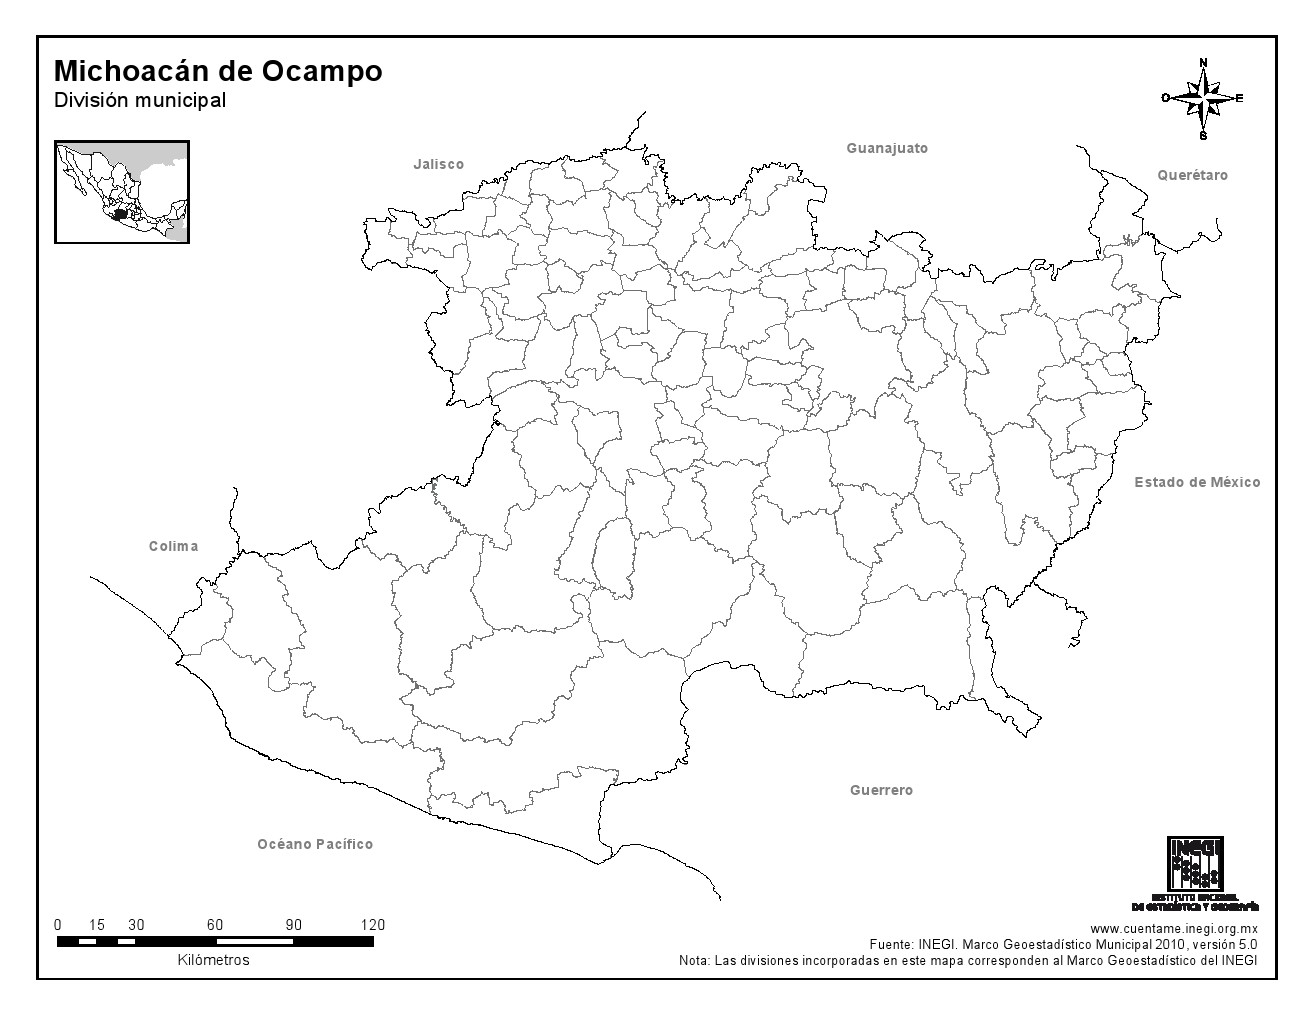 Mapa mudo de municipios de Michoacán de Ocampo. INEGI de México